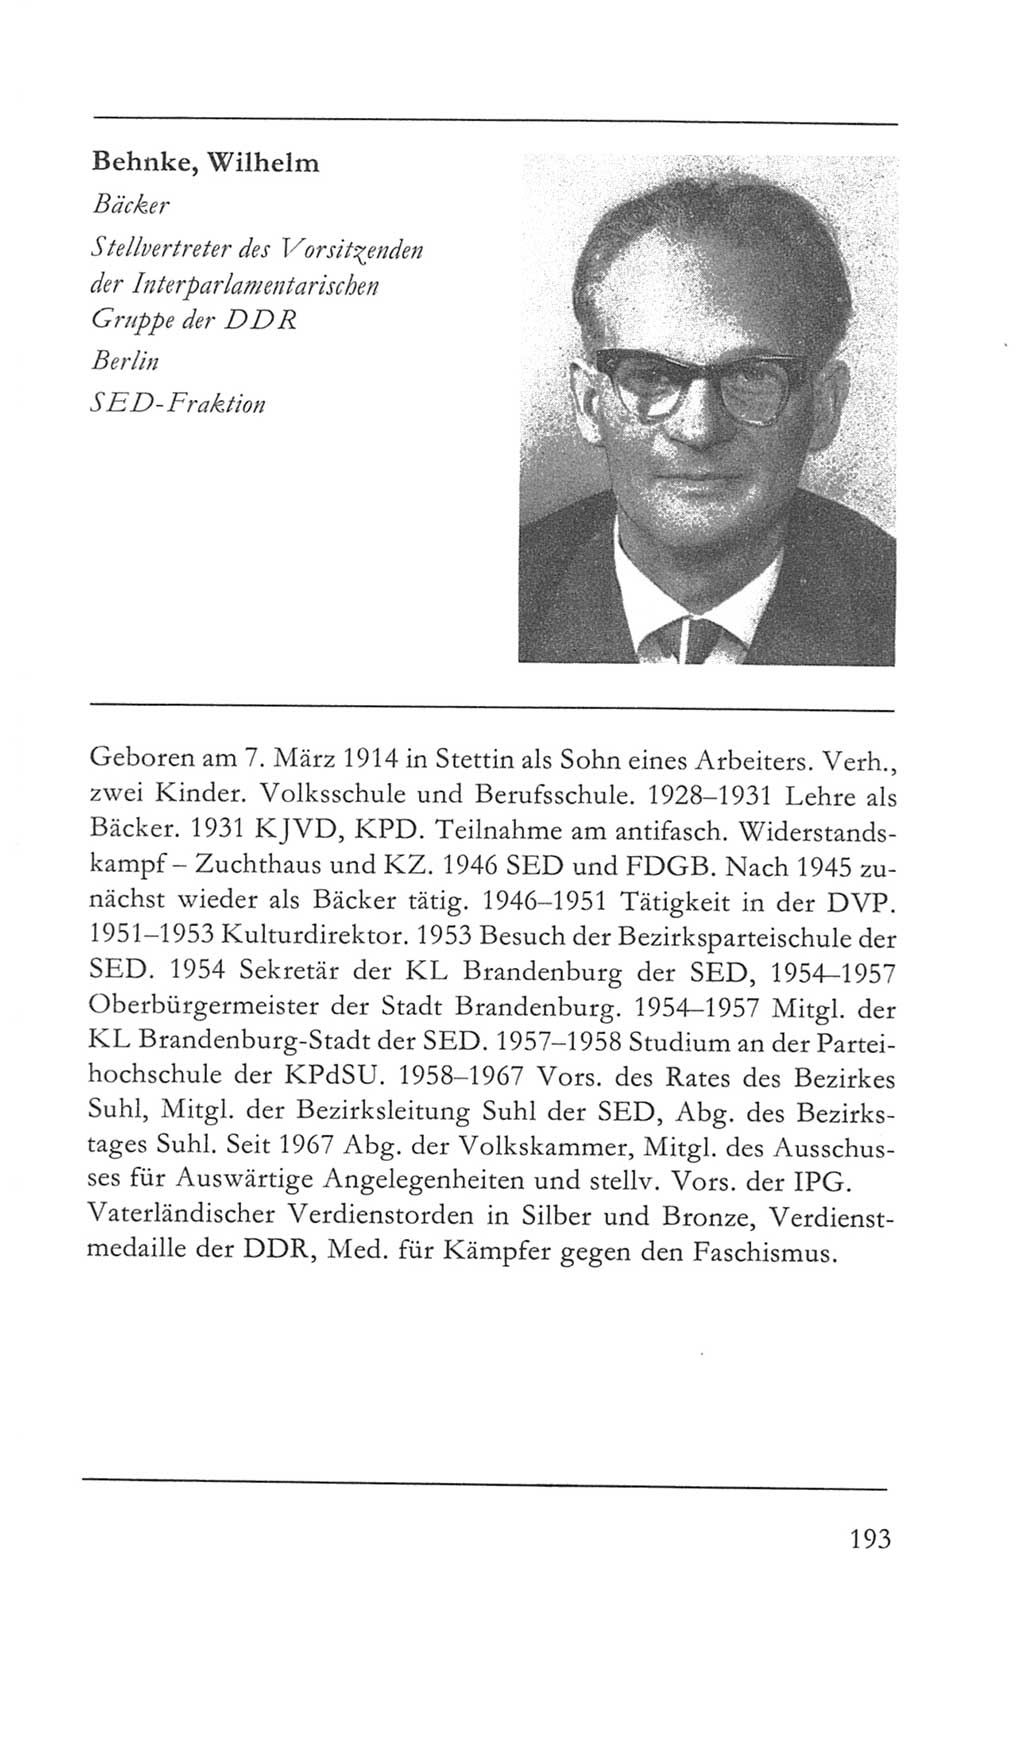 Volkskammer (VK) der Deutschen Demokratischen Republik (DDR) 5. Wahlperiode 1967-1971, Seite 193 (VK. DDR 5. WP. 1967-1971, S. 193)